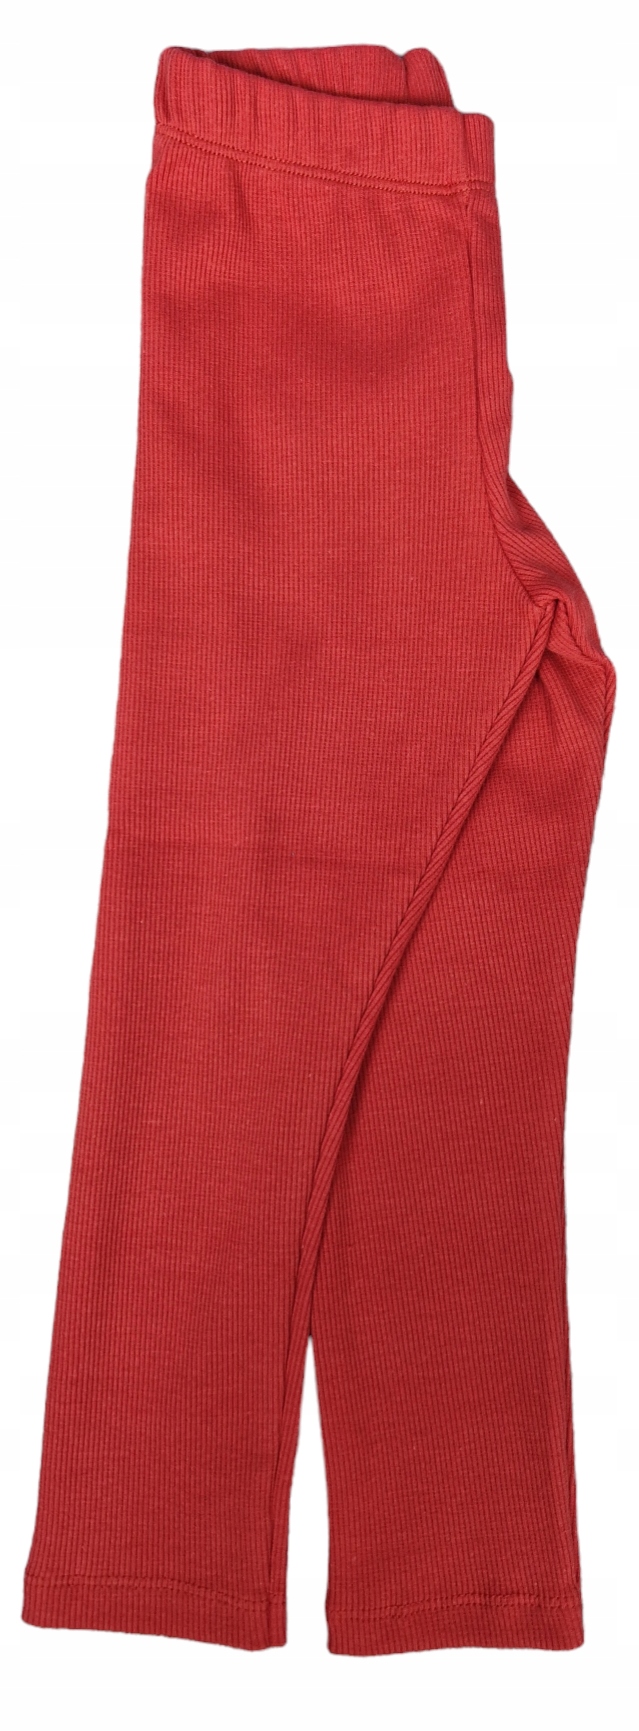 Legíny nohavice prúžky červené pre dievča od Chrisma veľkosť 128